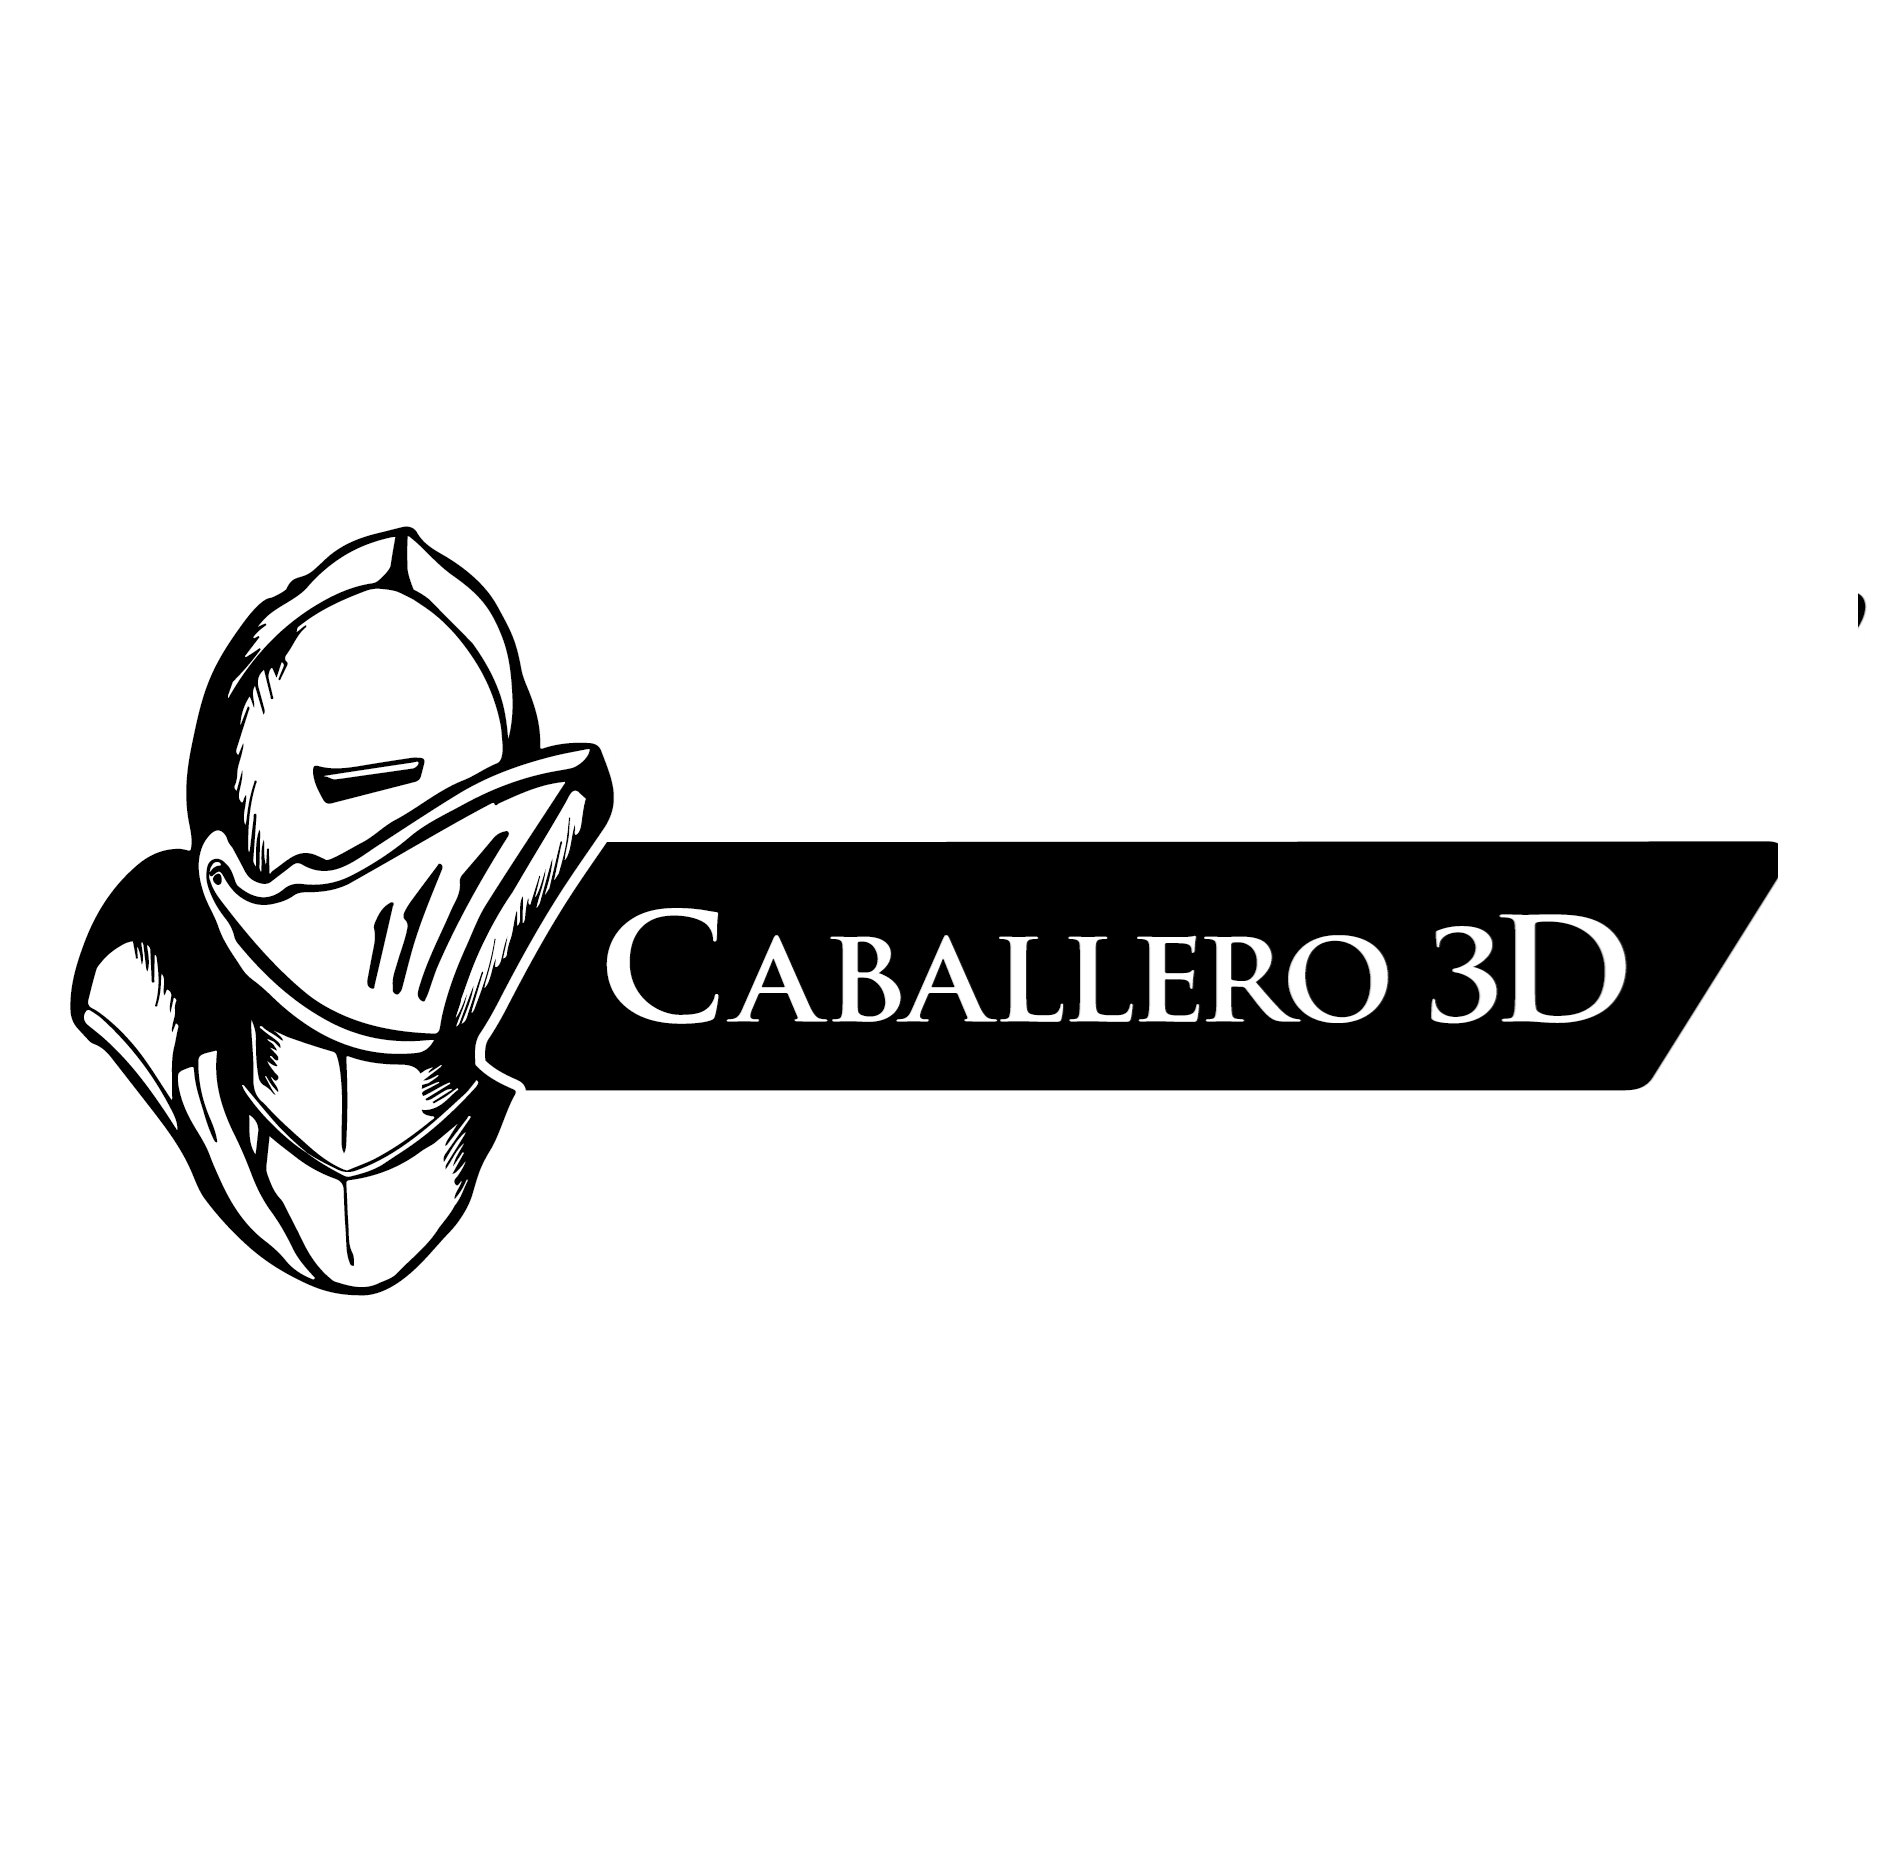 Caballero 3d